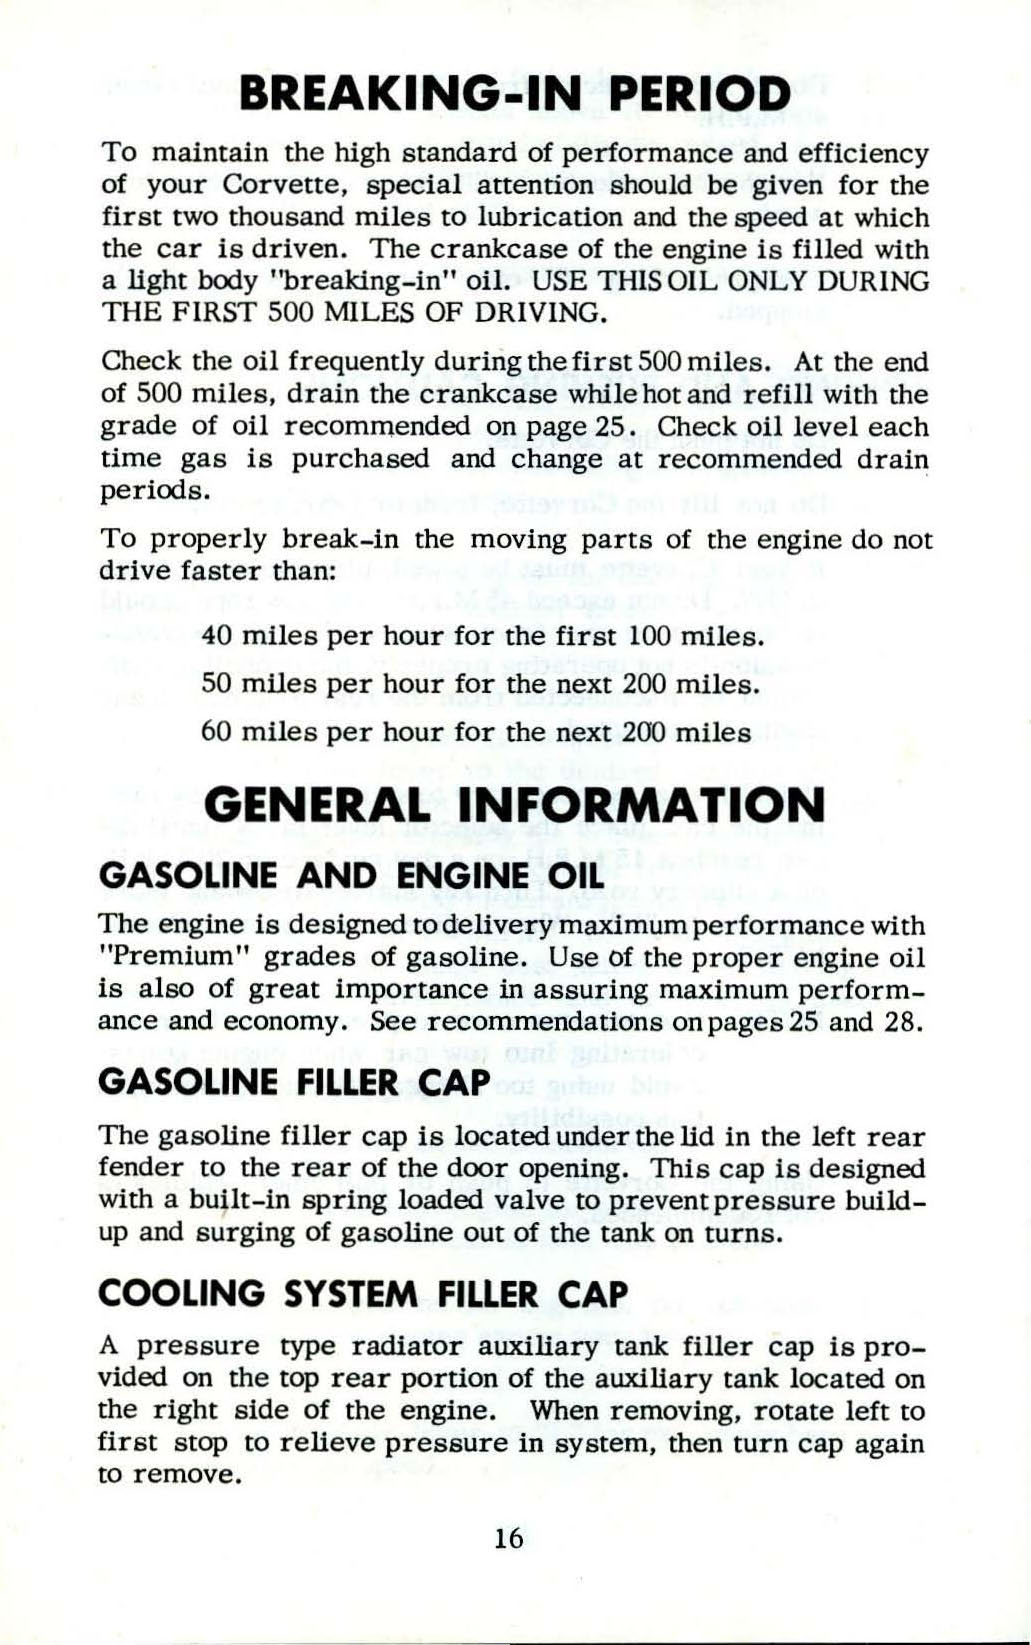 1953_Corvette_Owners_Manual-16